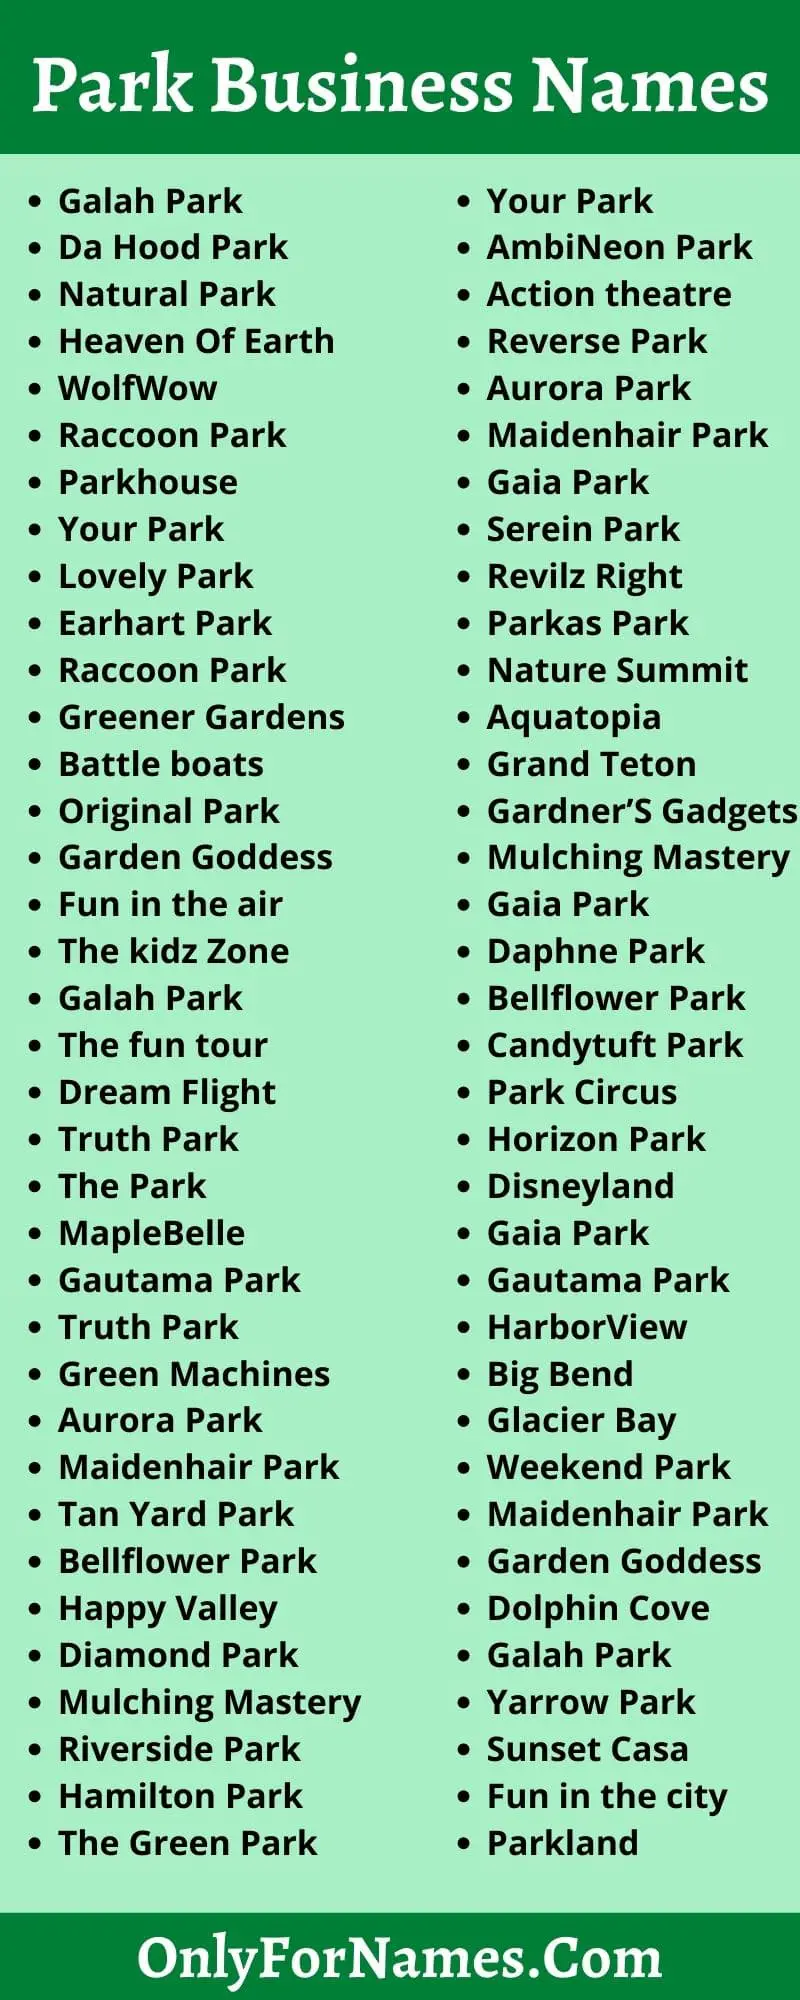 Park Business Names